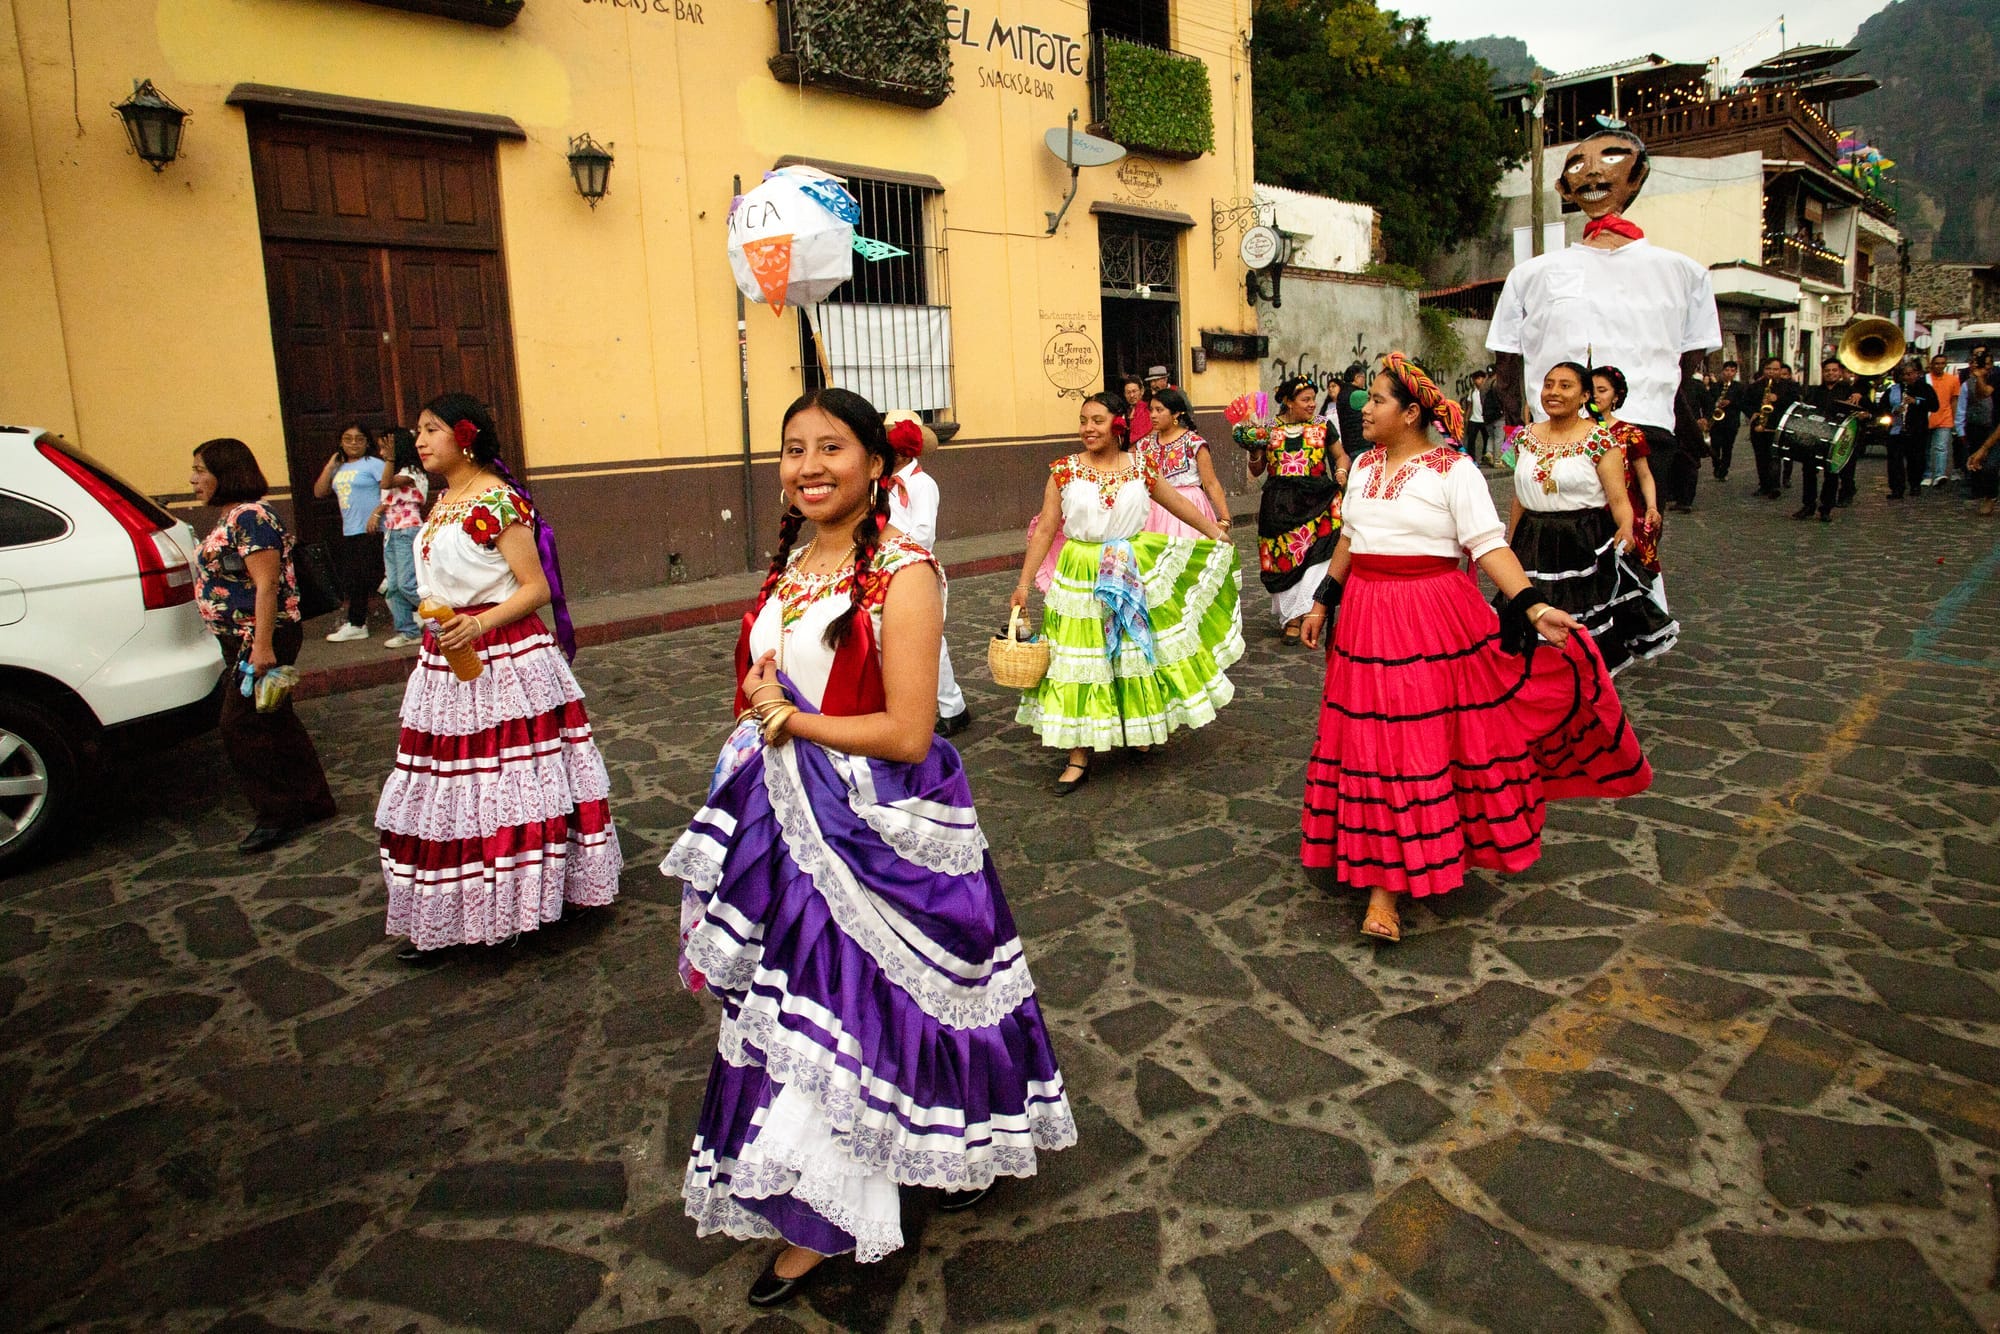 Festive parade in Tepoztlán.